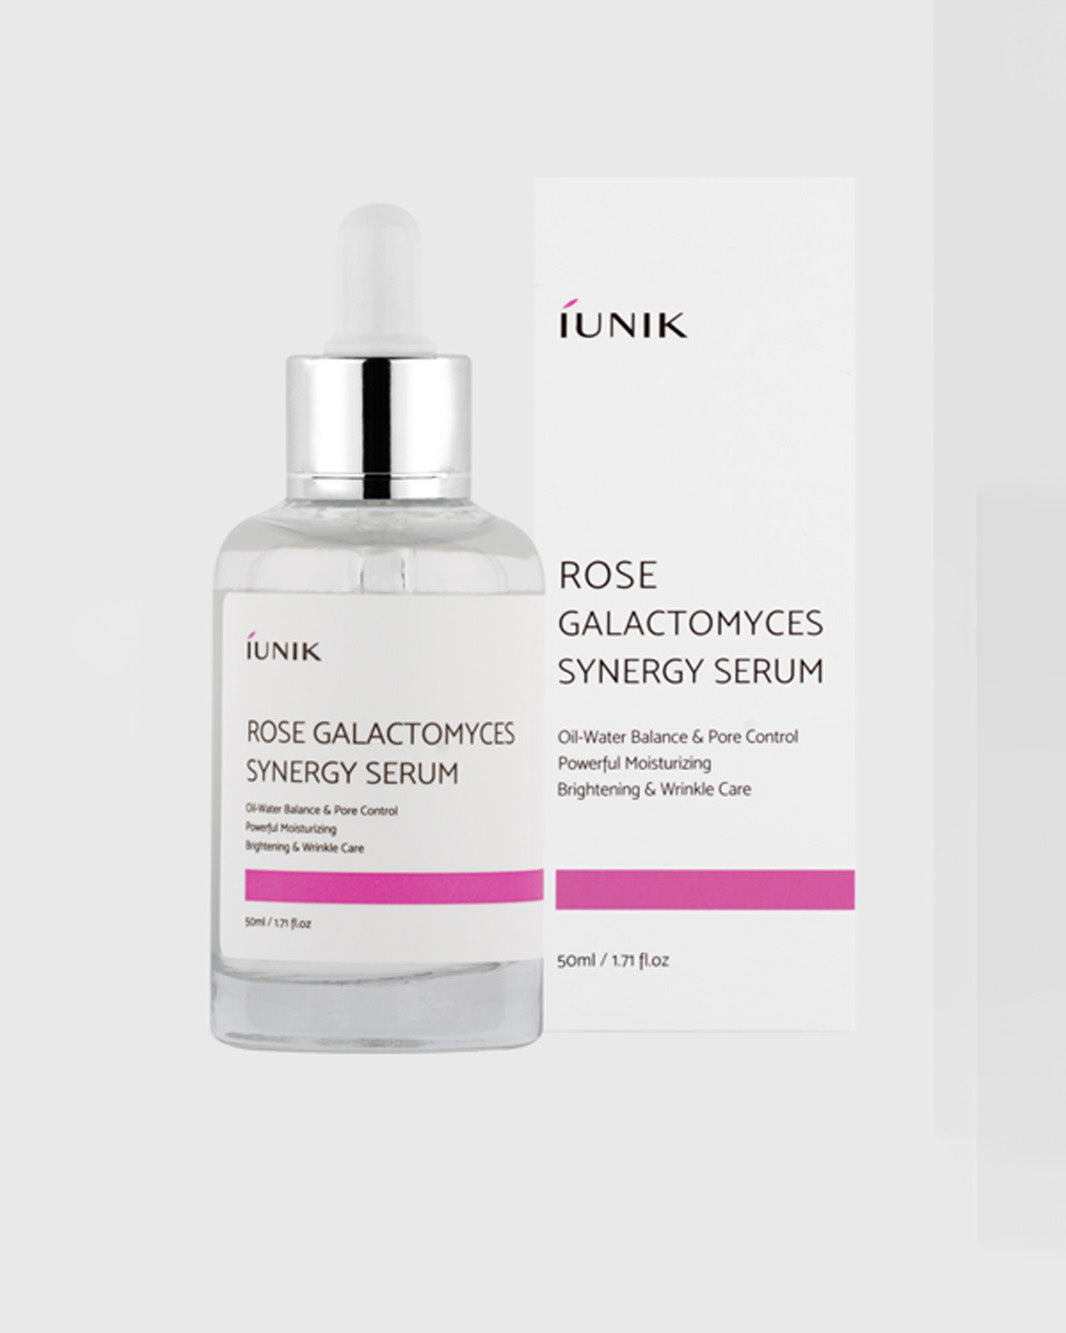 IUNIK Rose Galactomyces Synergy Serum